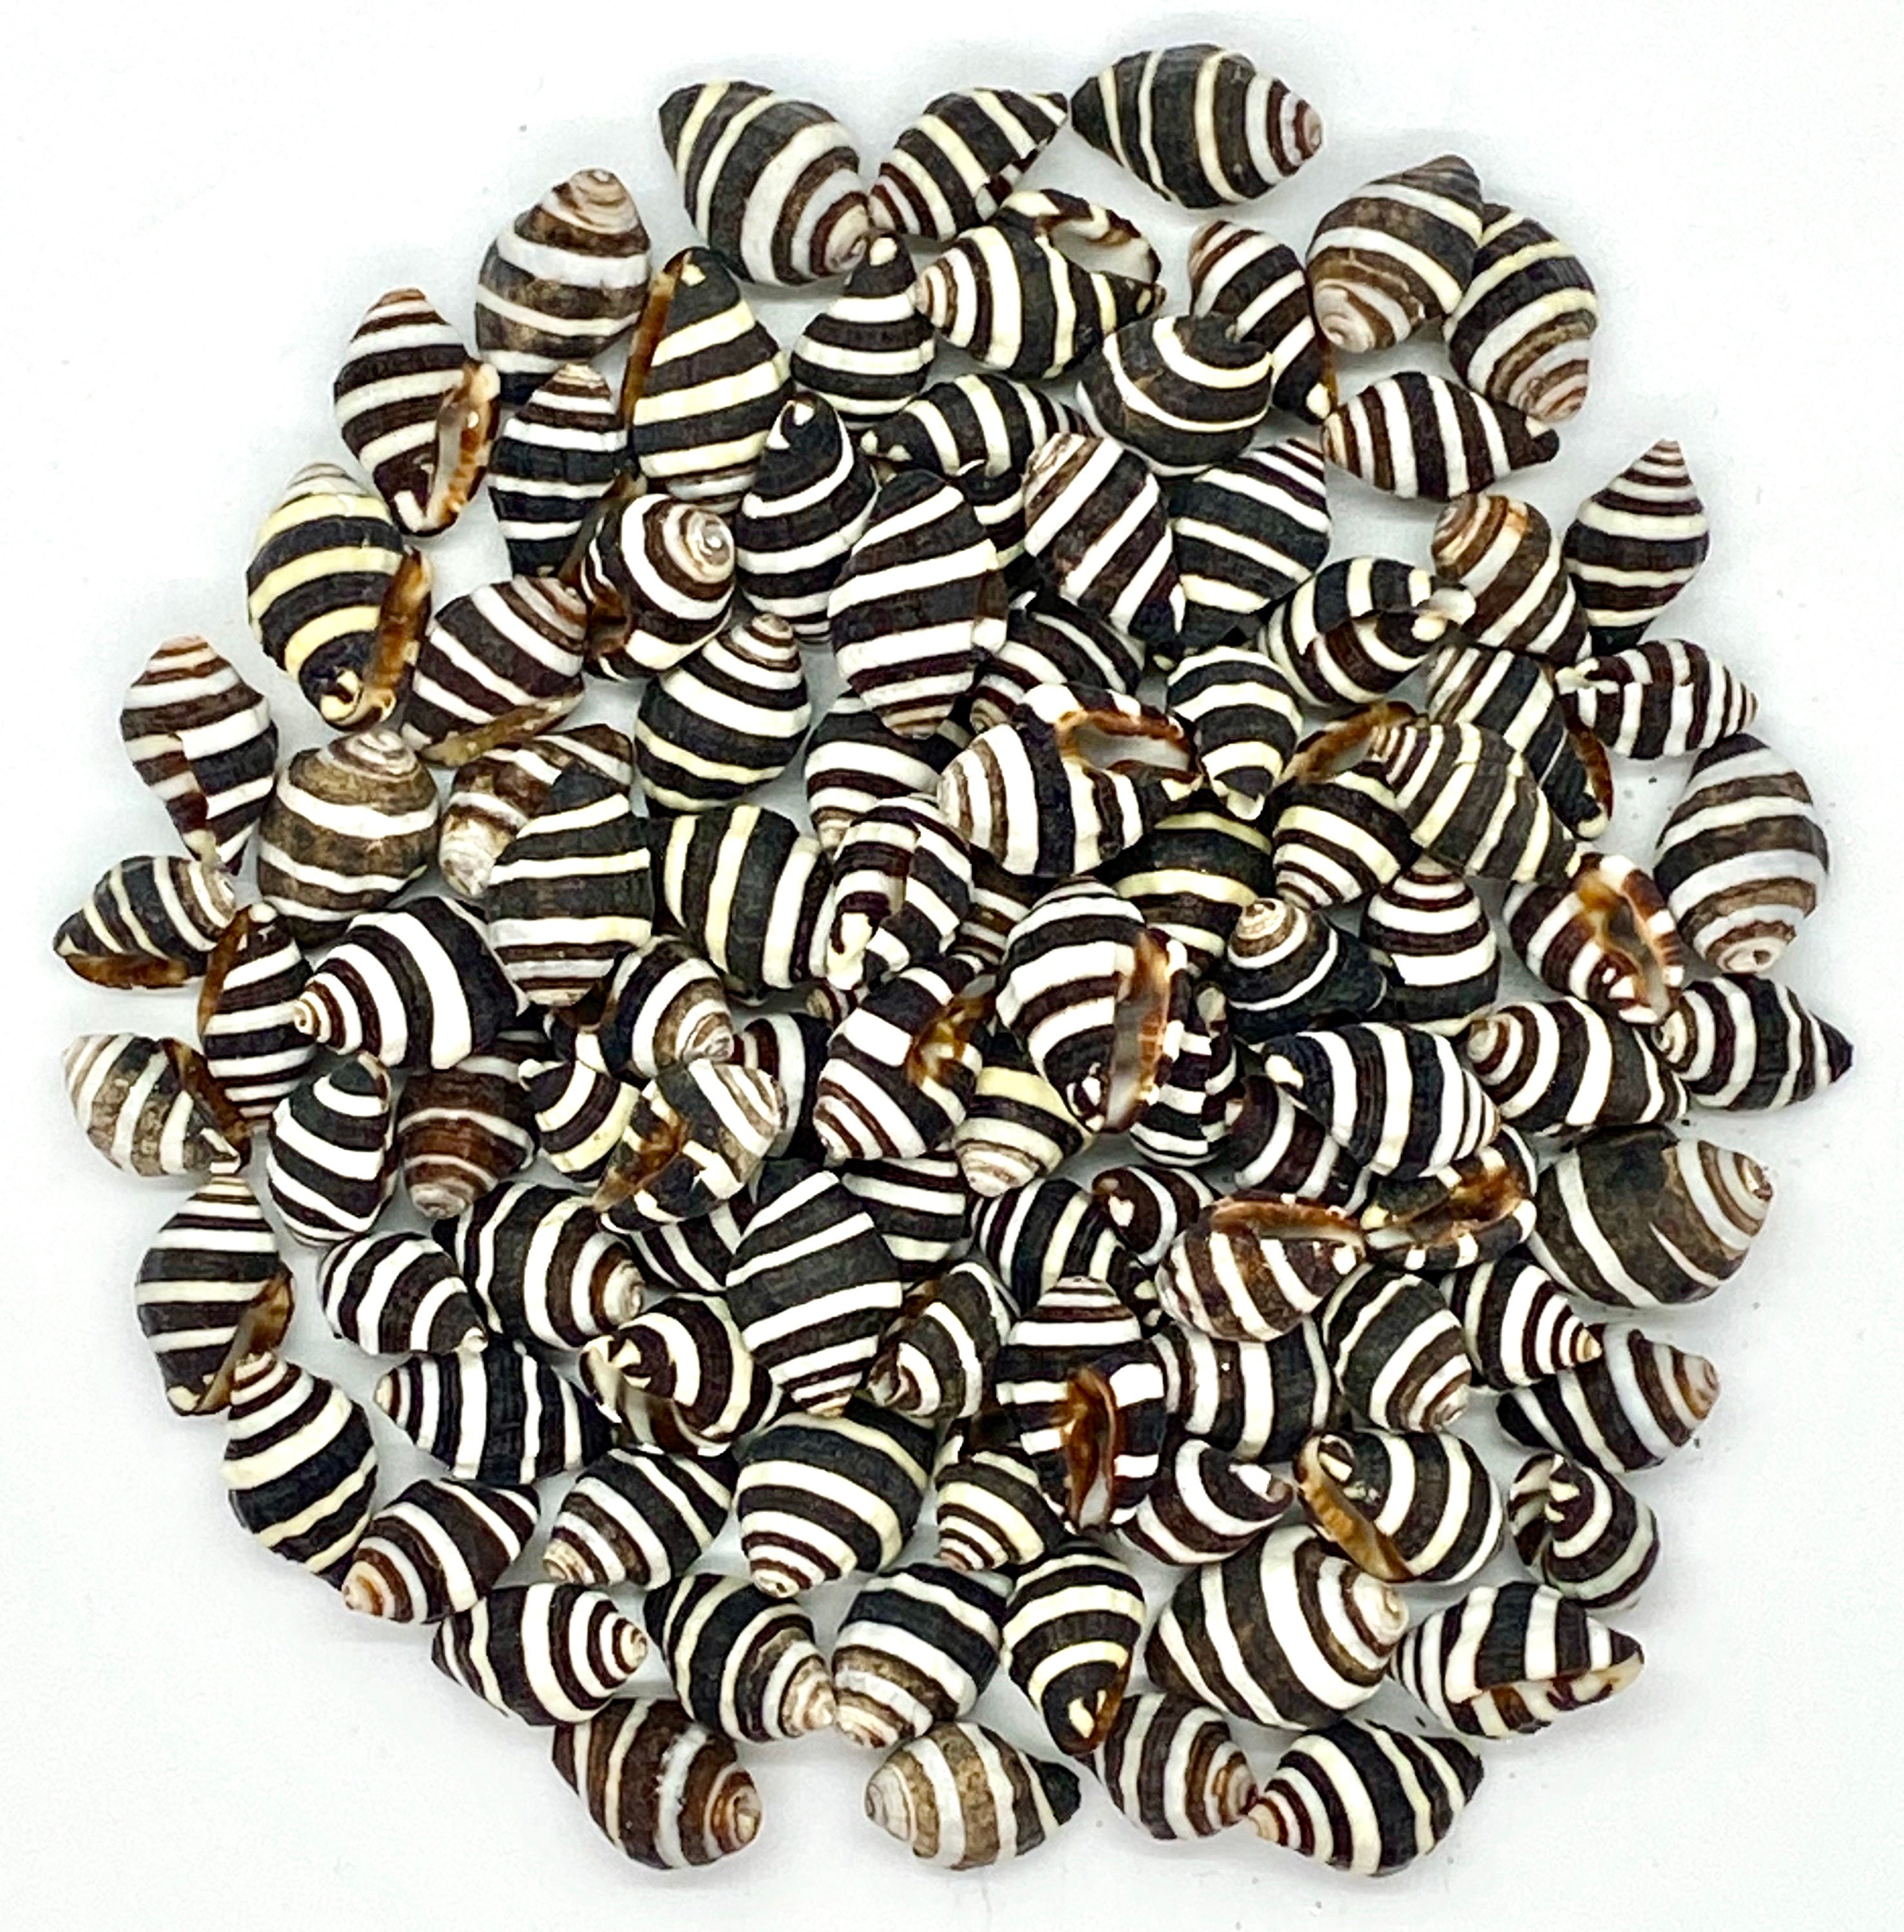 Zebra Striped Nassa Shell Bead